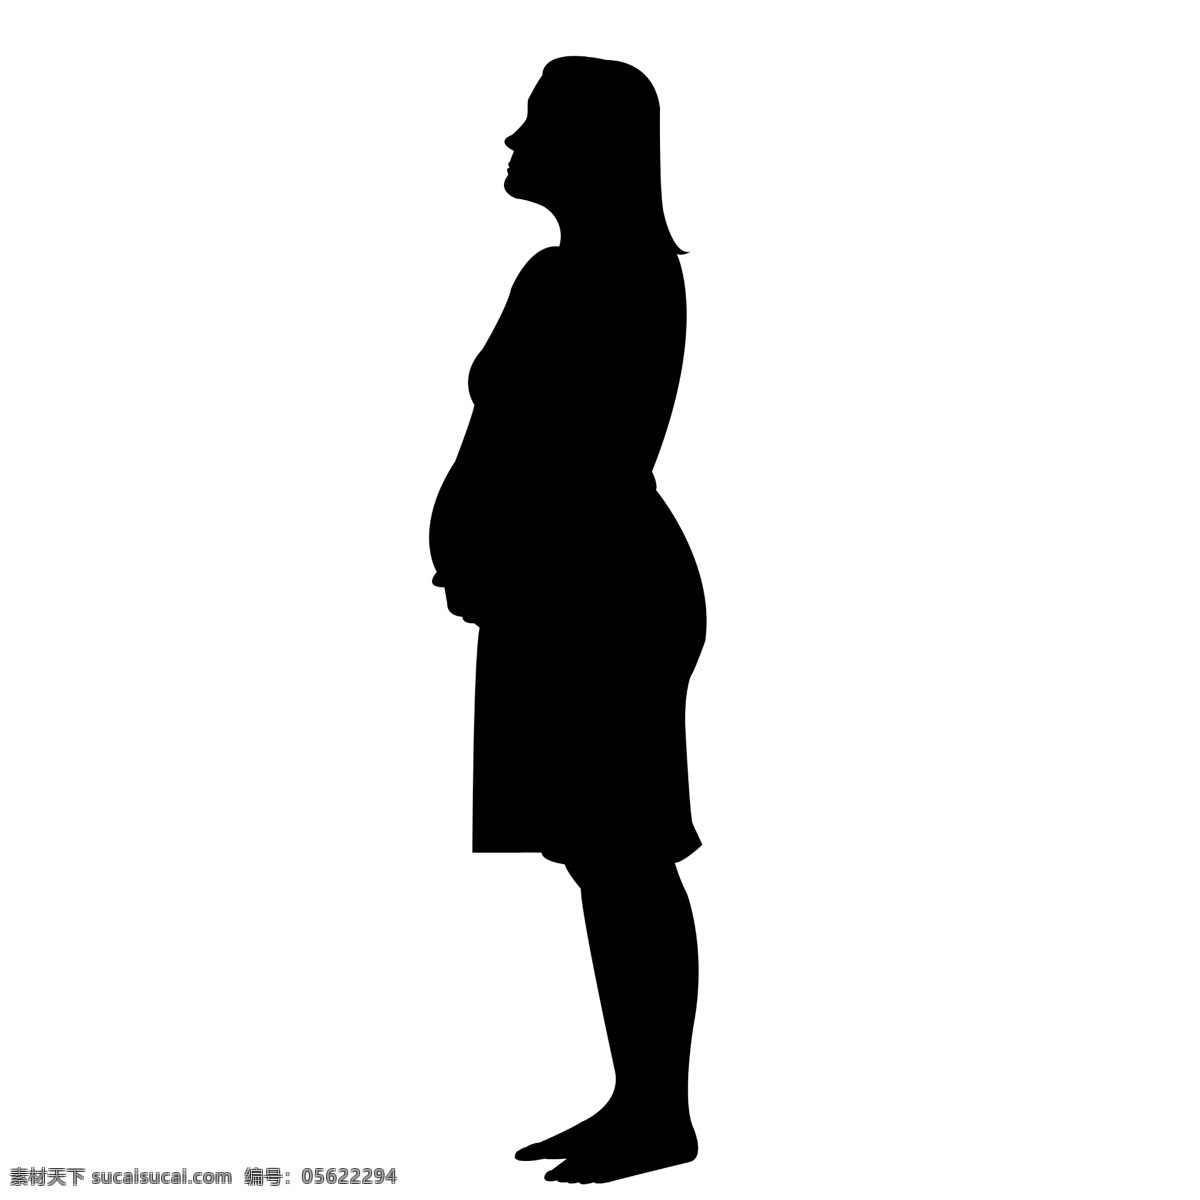 孕妇 剪影 图 矢量图 孕妇全身剪影 光影 黑白 插图 黑色 影子 矢量 全身 母婴 妇女